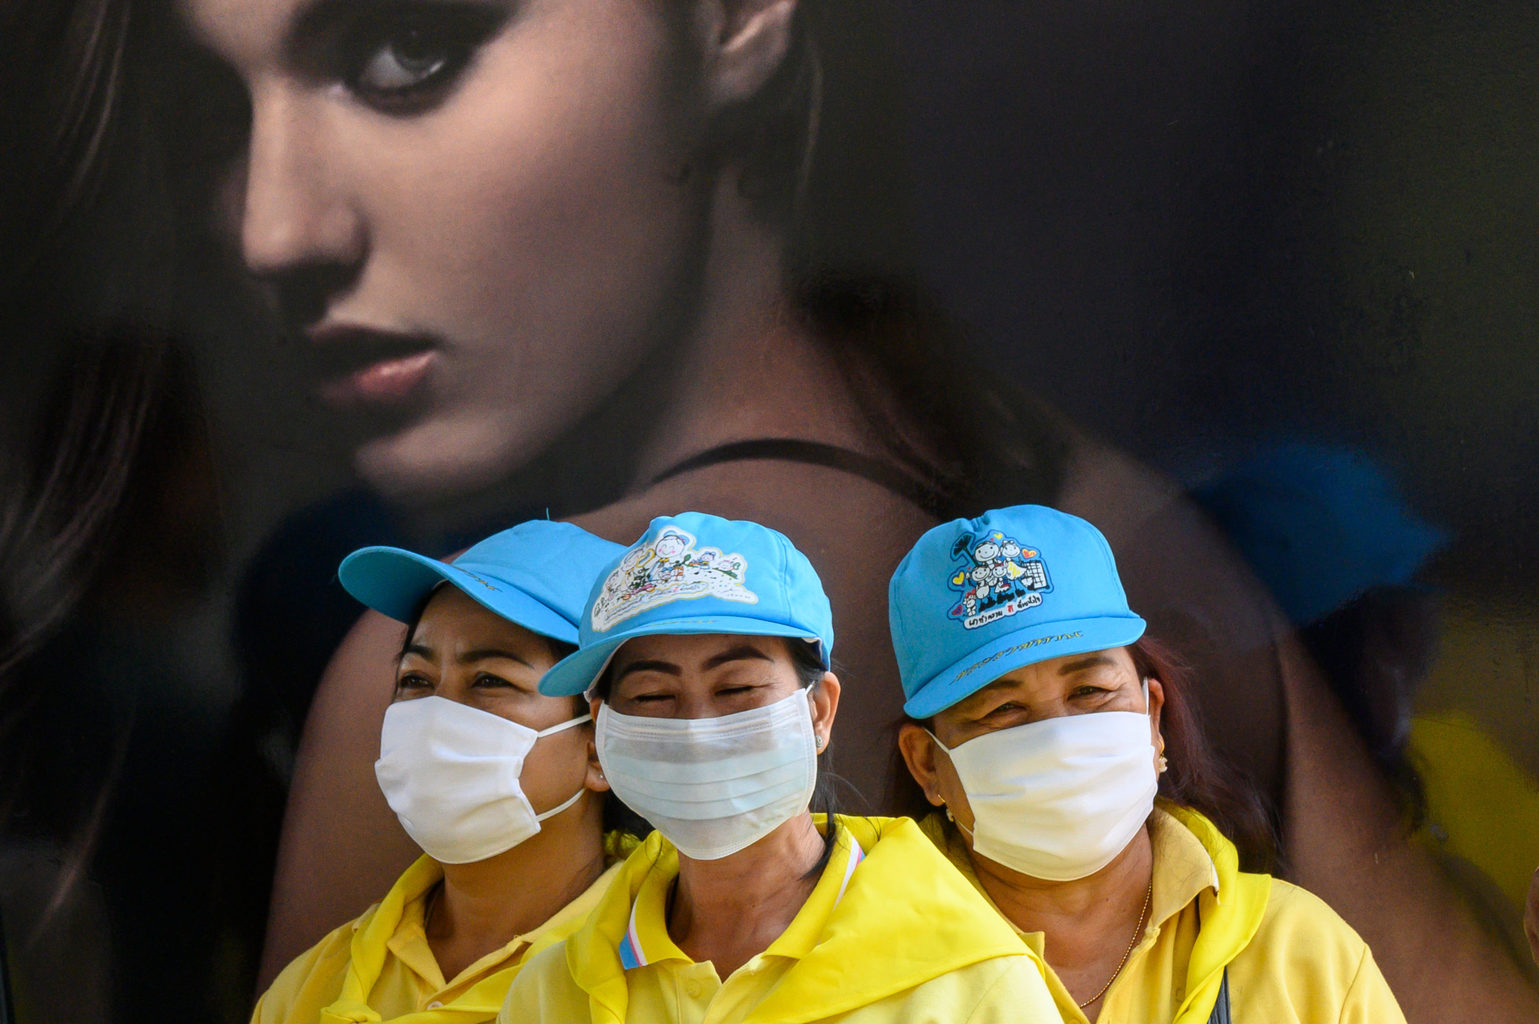 Védőmaszkot viselő önkéntesek fertőtlenítenek egy gyalogoshidat Bangkokban, a koronavírus elleni küzdelemben 2020. február 24-én #moszkvater